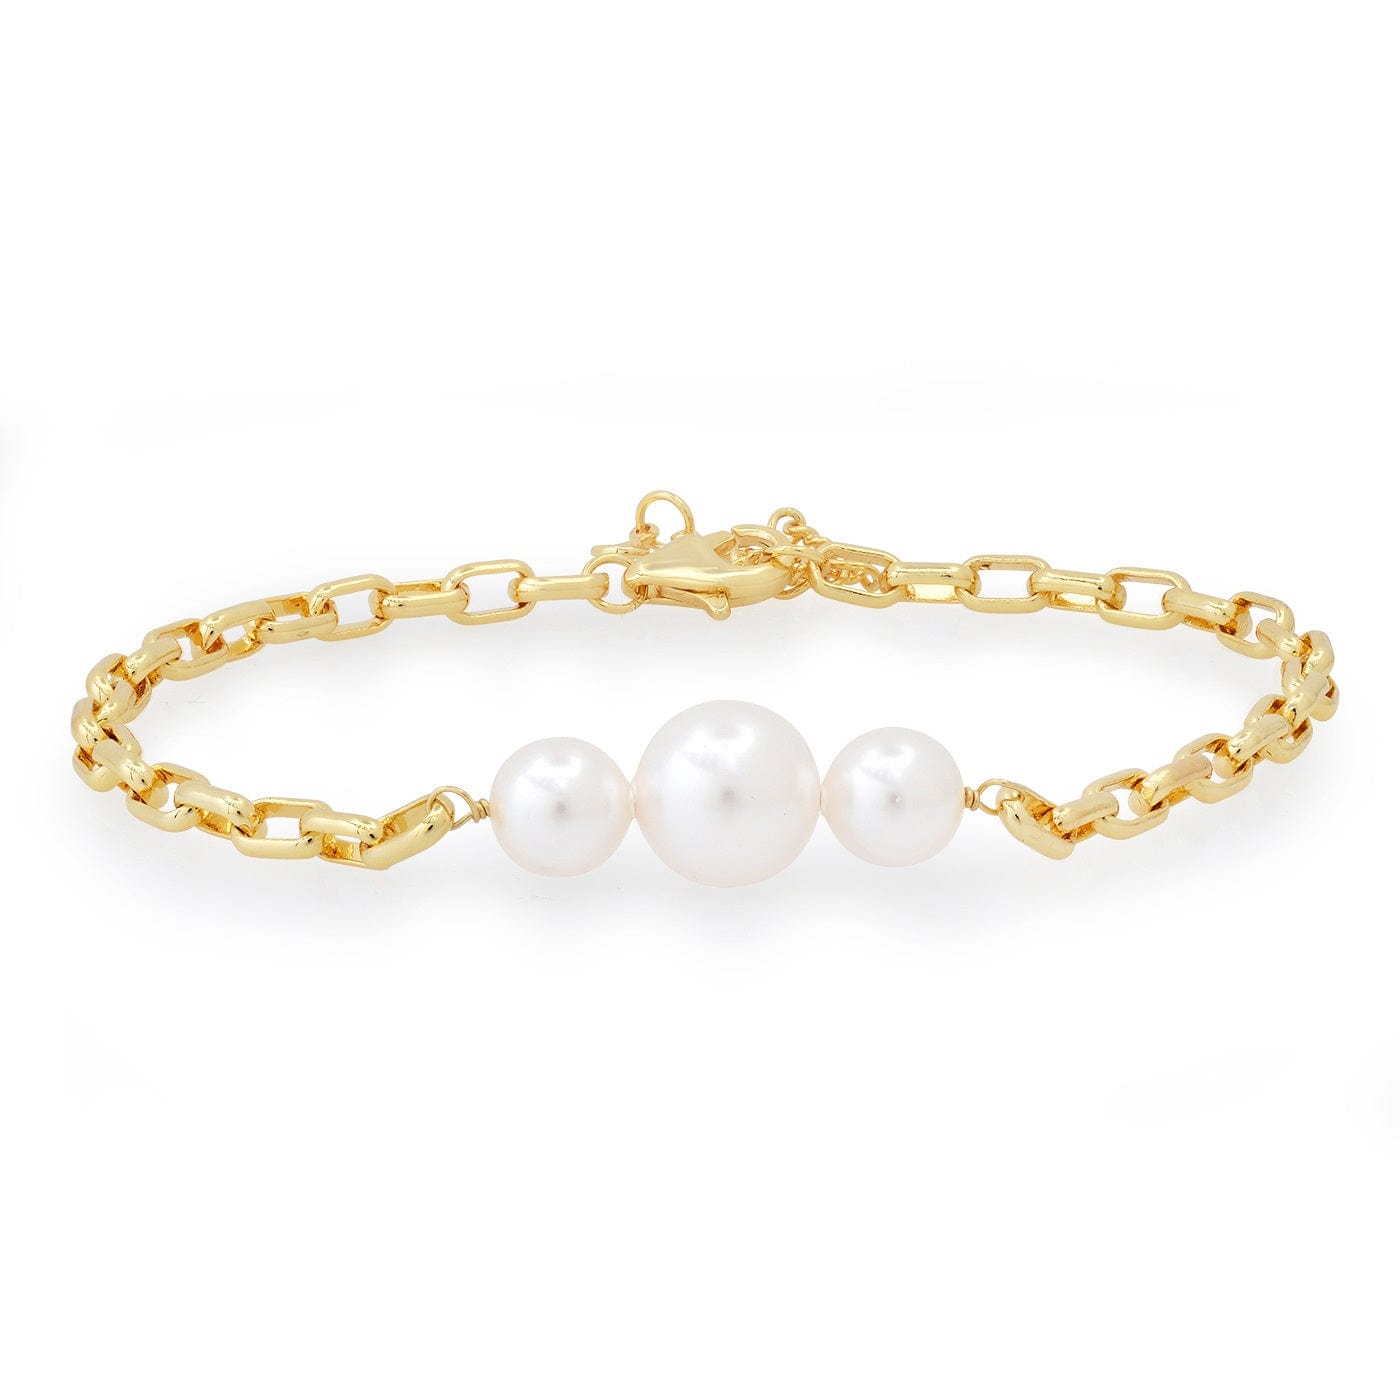 TAI JEWELRY Bracelet Chain Link Bracelet with 3 Pearls